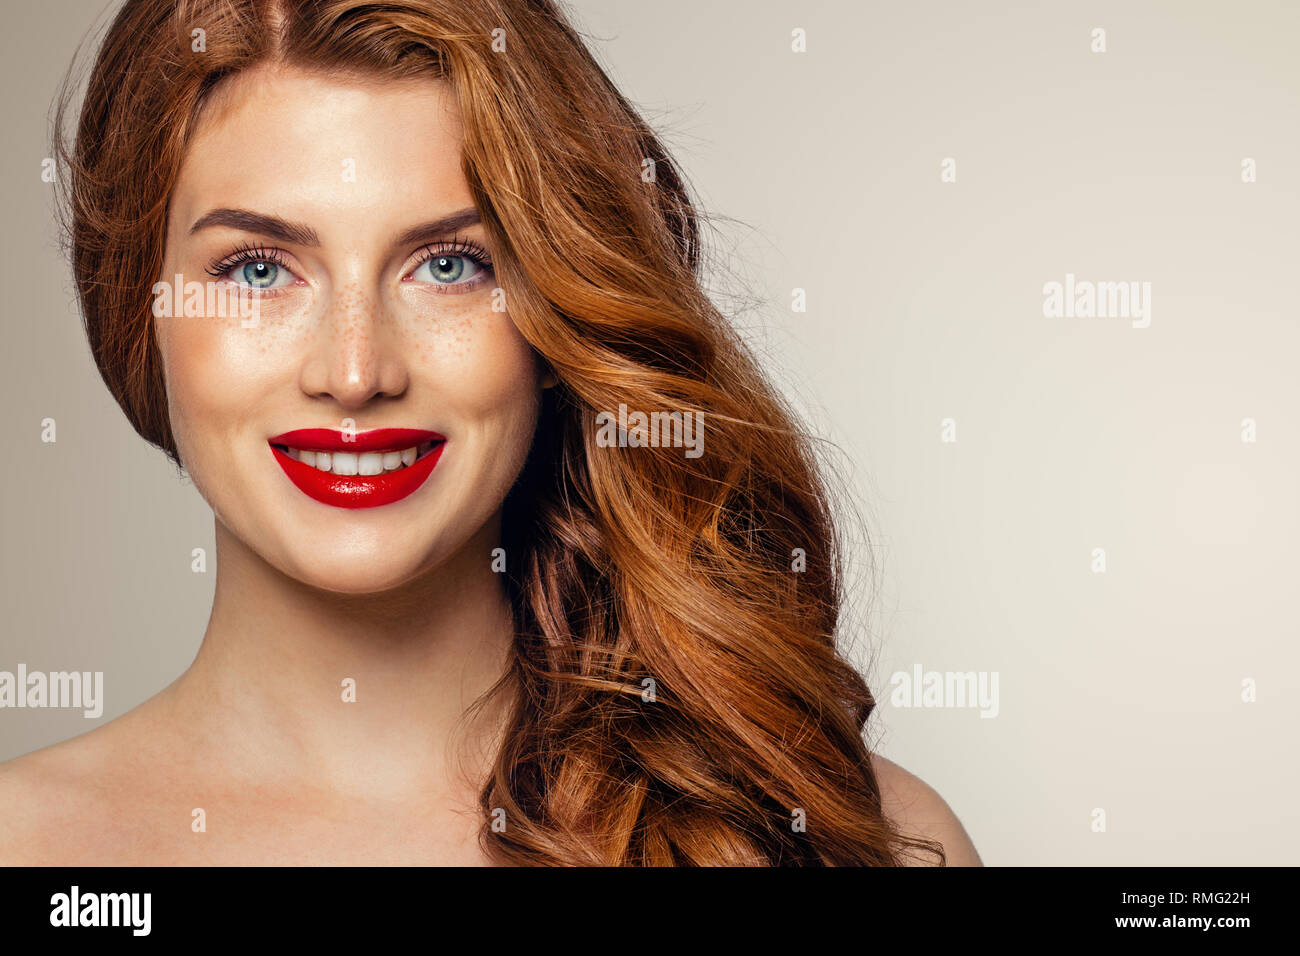 Candida donna con lentiggini e capelli allo zenzero. Natural redhead ragazza ritratto dello stile di vita Foto Stock